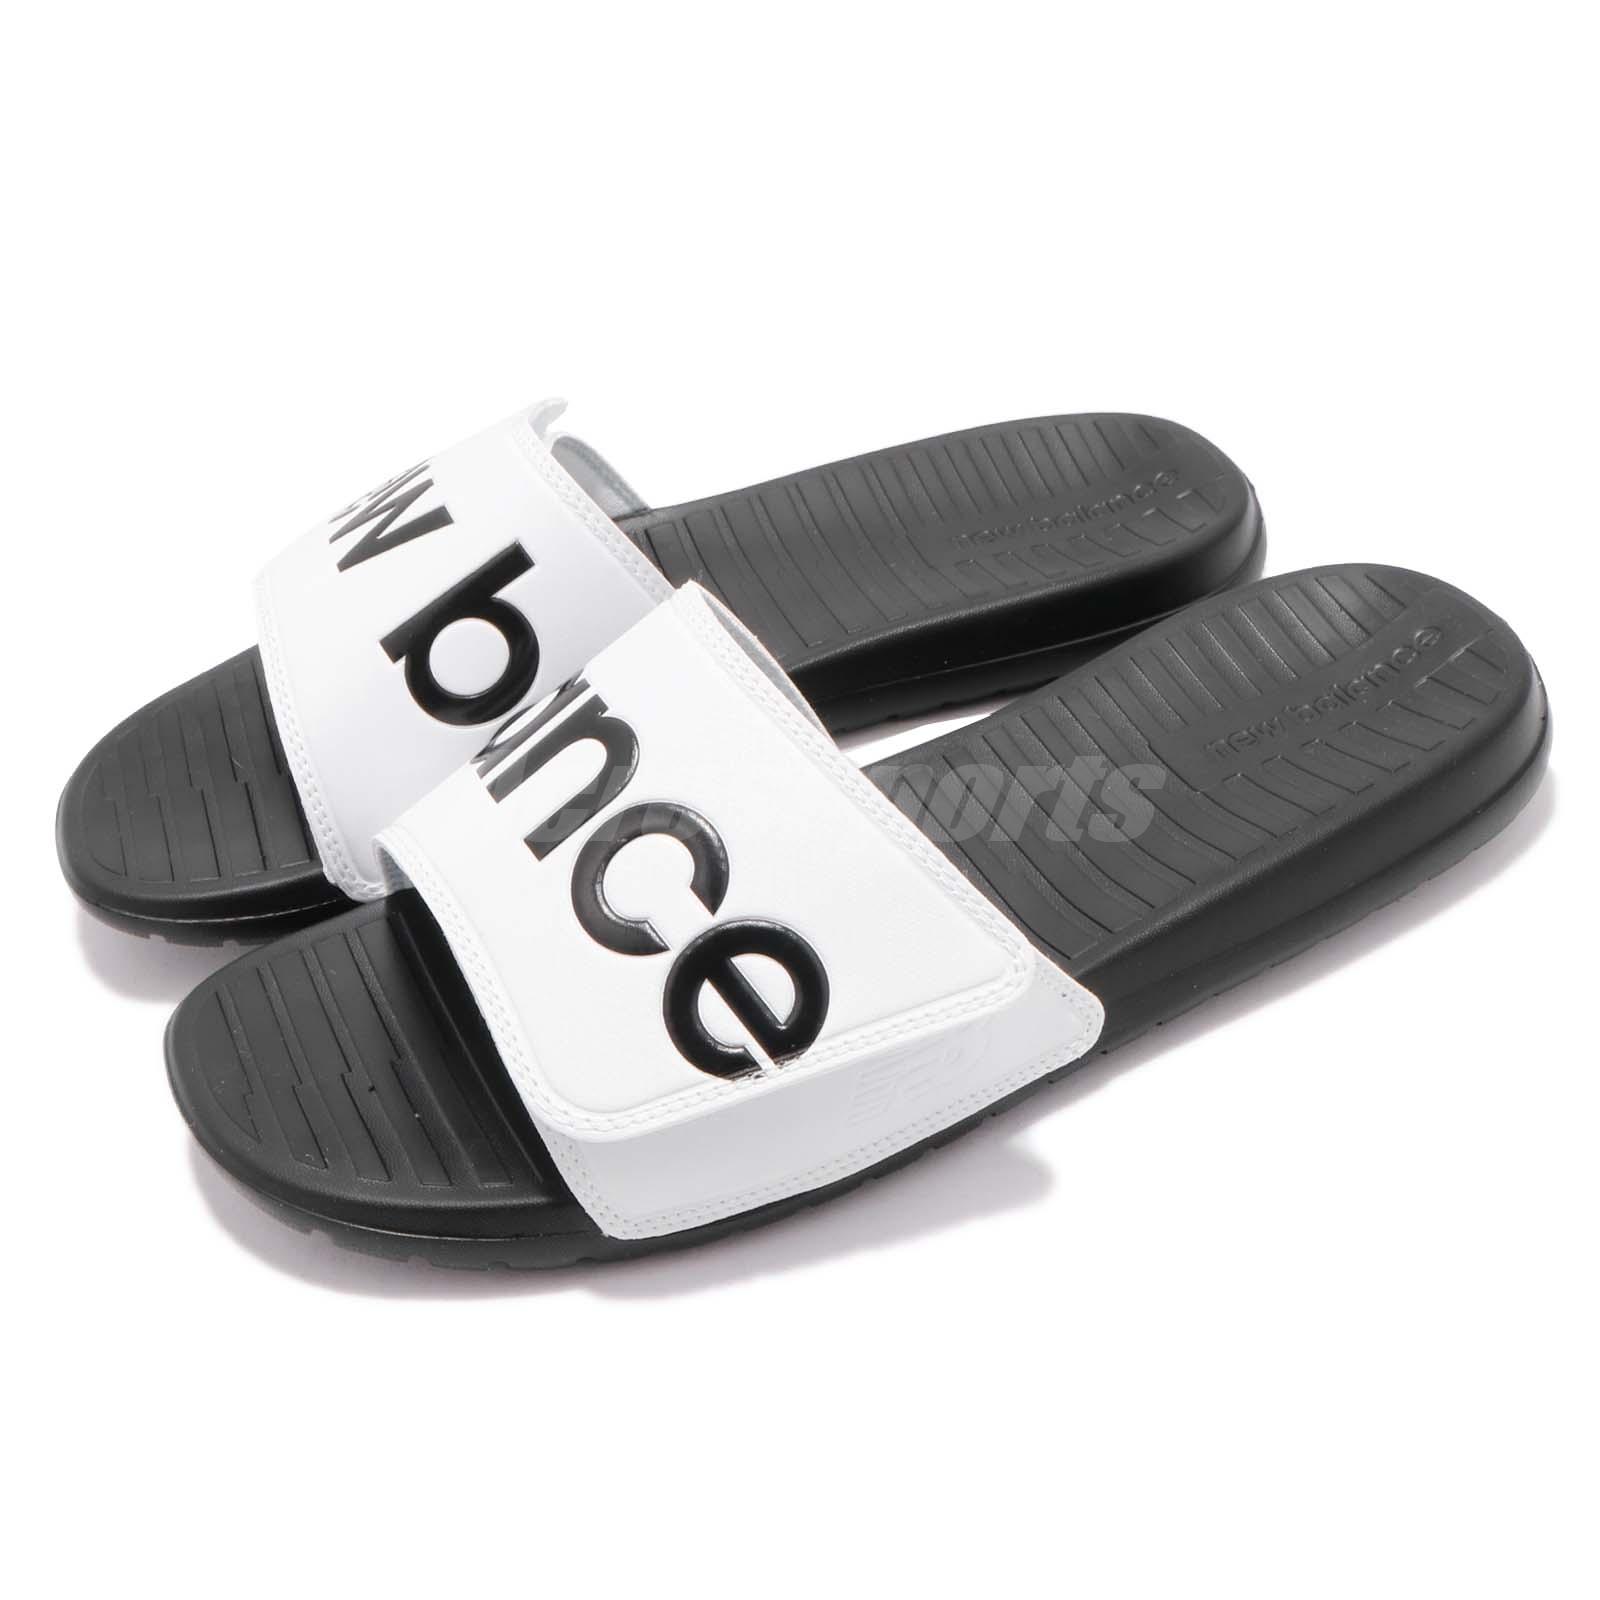 Dép Quai Dán NEW BALANCE Men's sandals BLANCO/NEGRO - SDL230WT